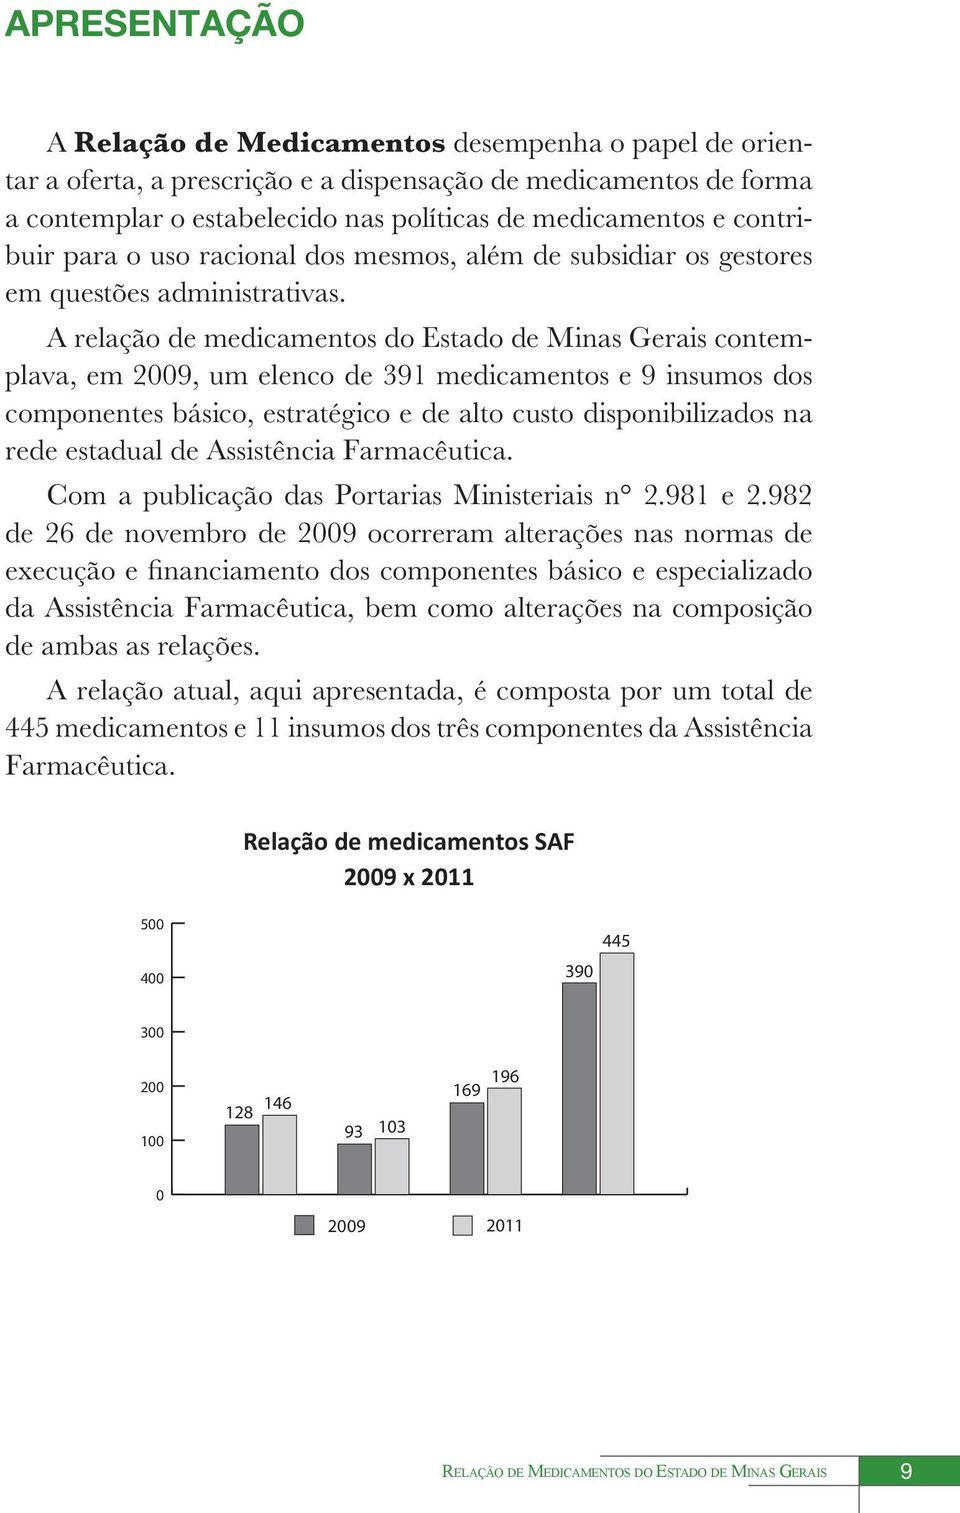 A relação de medicamentos do Estado de Minas Gerais contemplava, em 2009, um elenco de 391 medicamentos e 9 insumos dos componentes básico, estratégico e de alto custo disponibilizados na rede